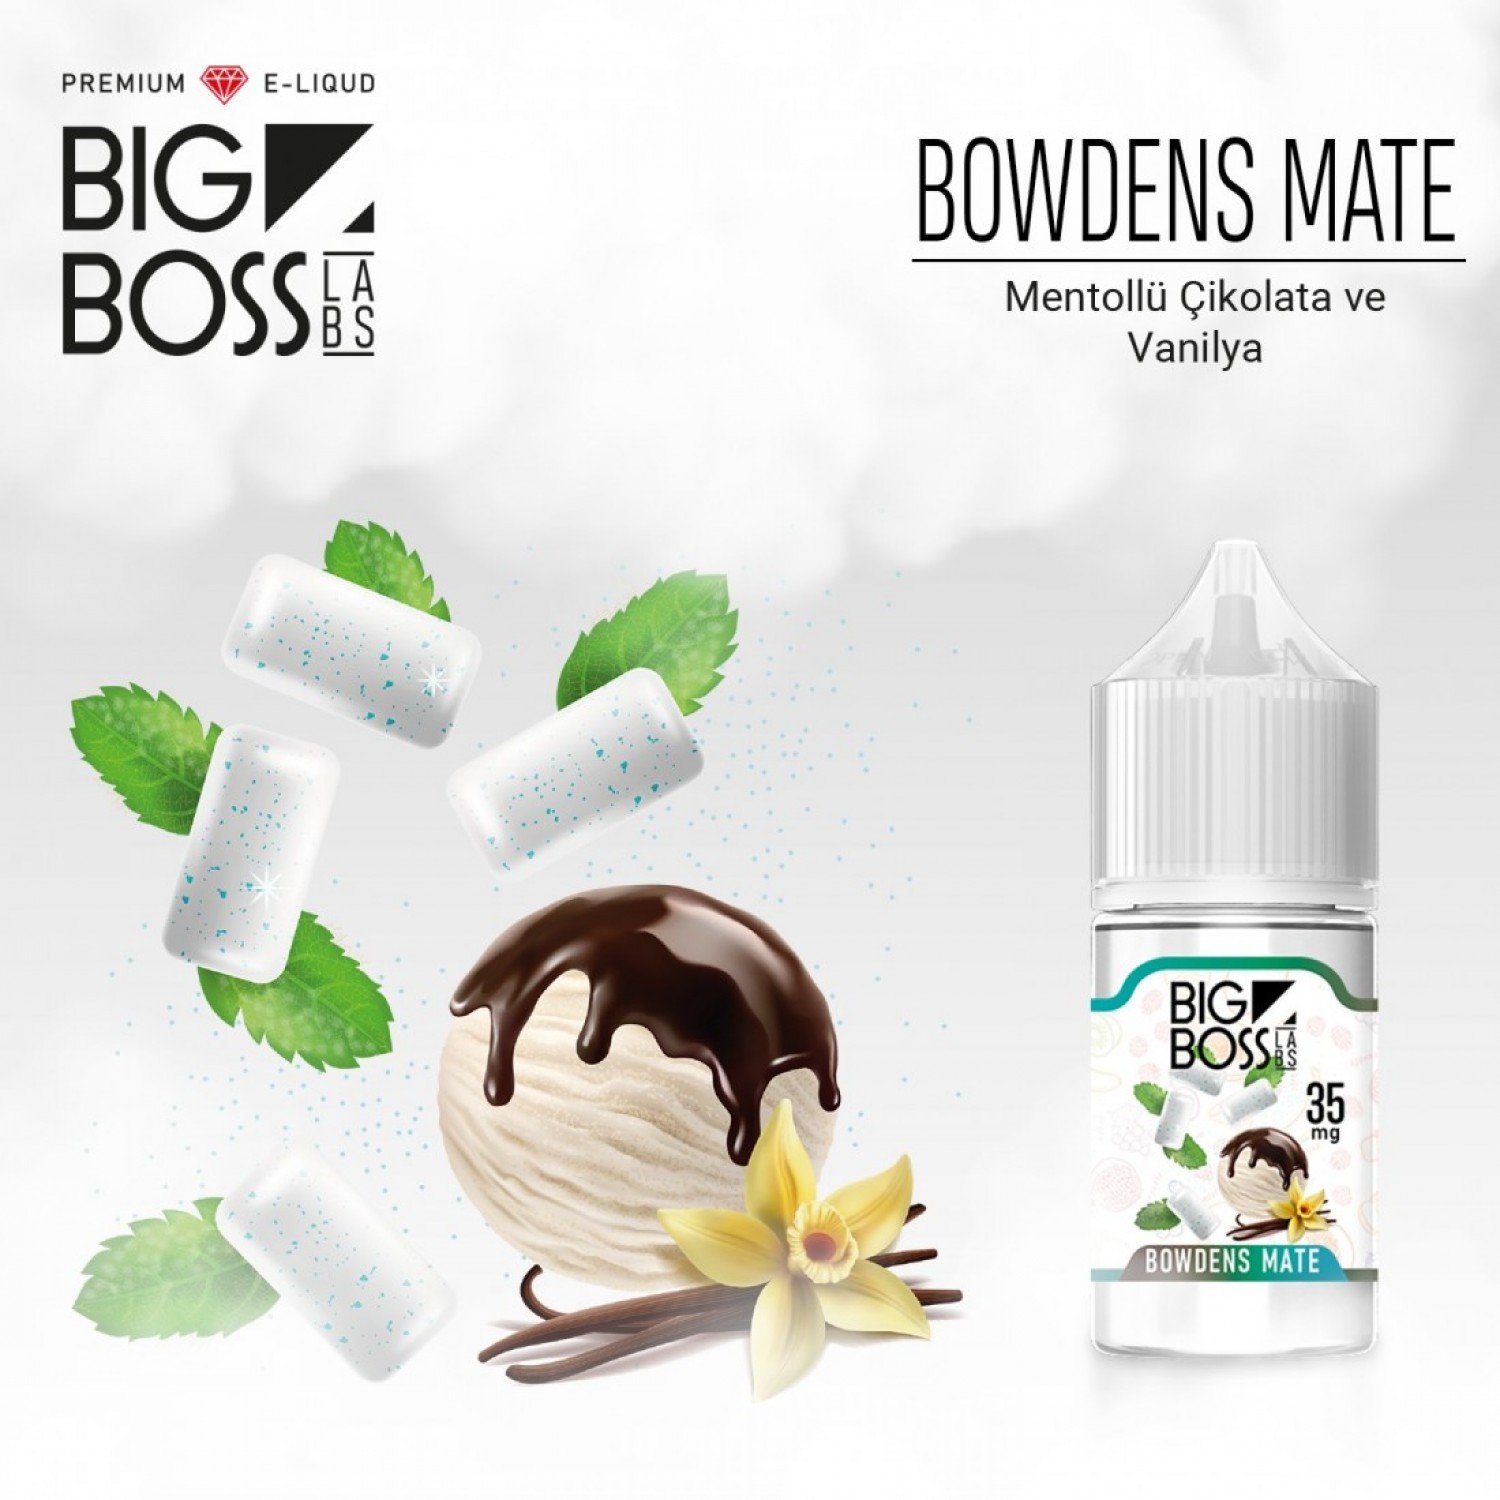 Big Boss - Bowden’s Mate 30 ml Likit